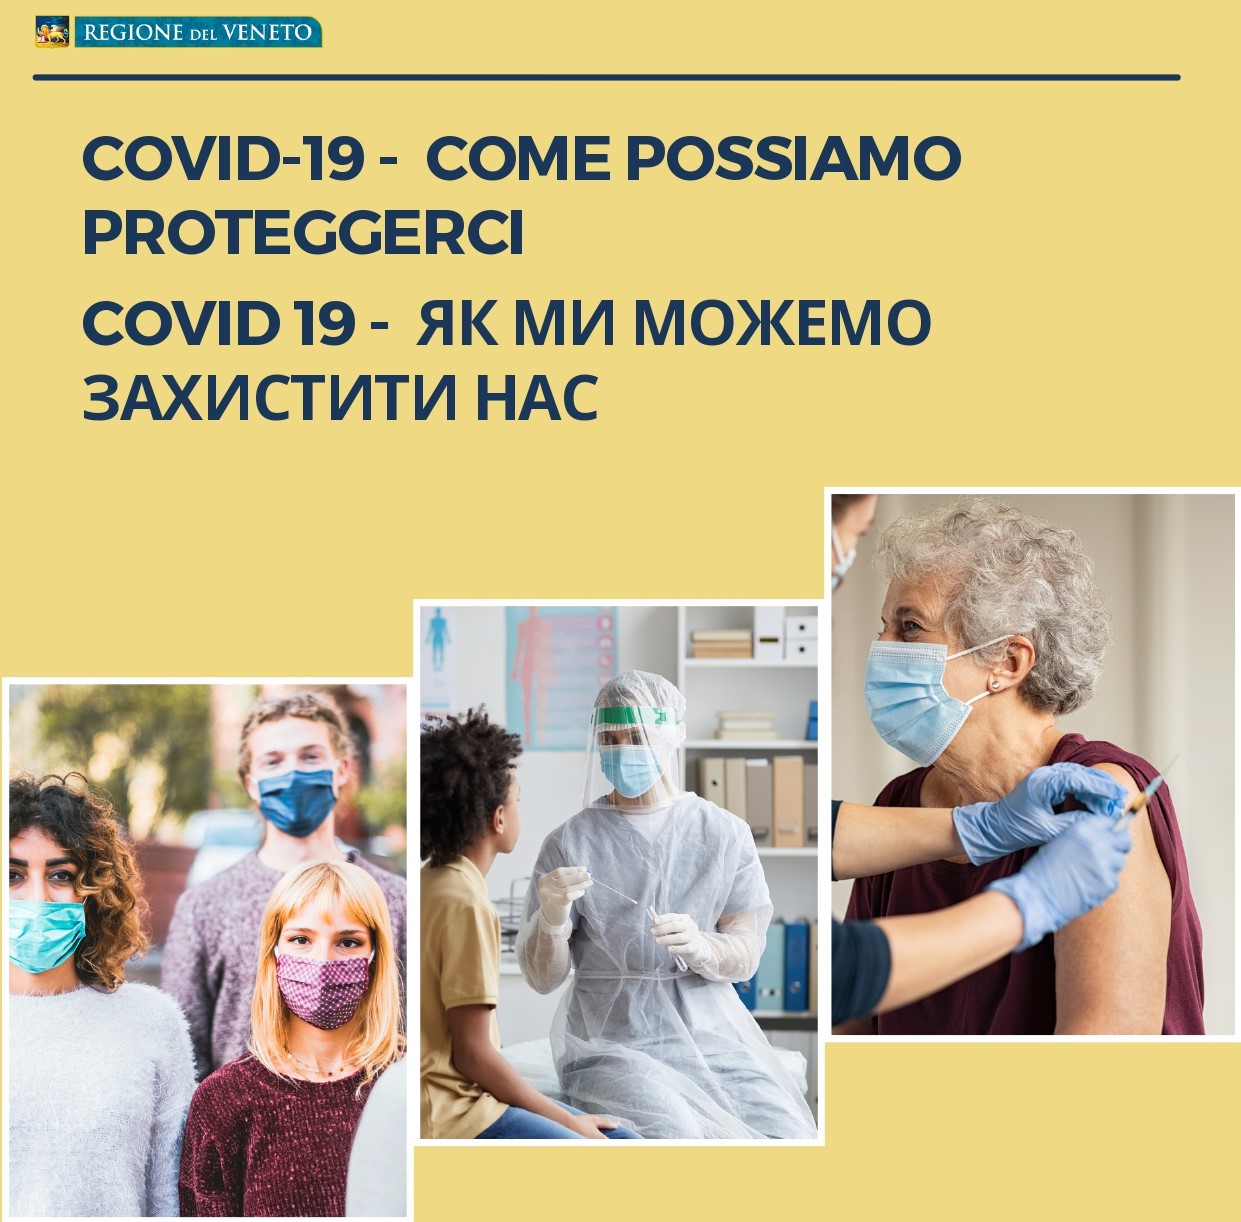 Una brochure in lingua ucraina nelle farmacie veronesi per aiutare i profughi